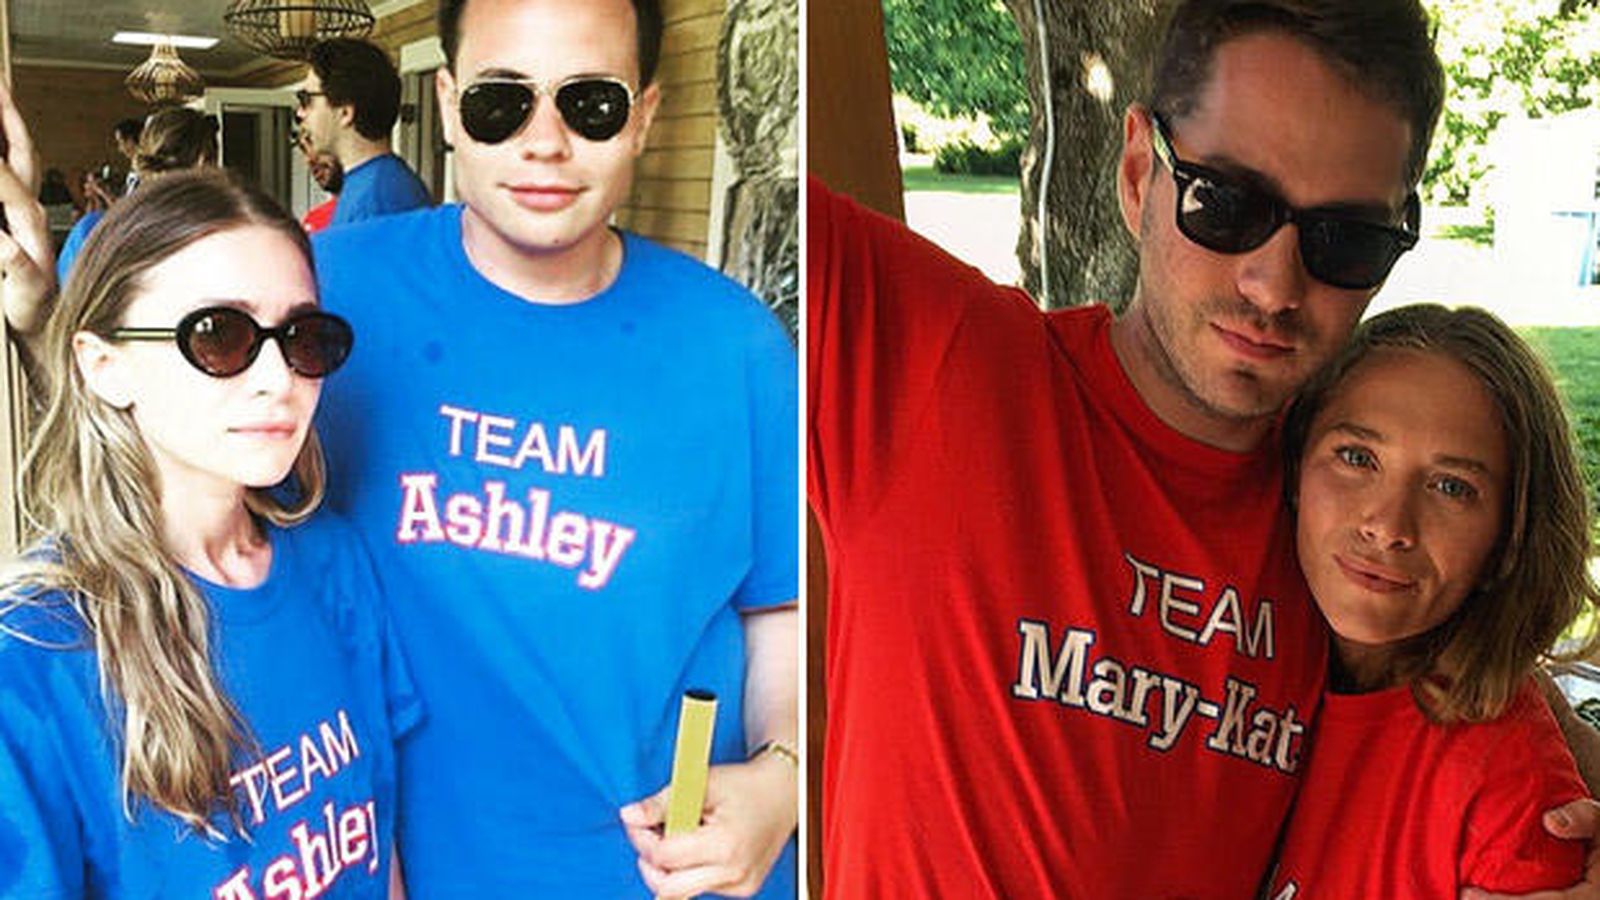 Foto: Azul para Ashley y rojo para Mary-Kate (Instagram)